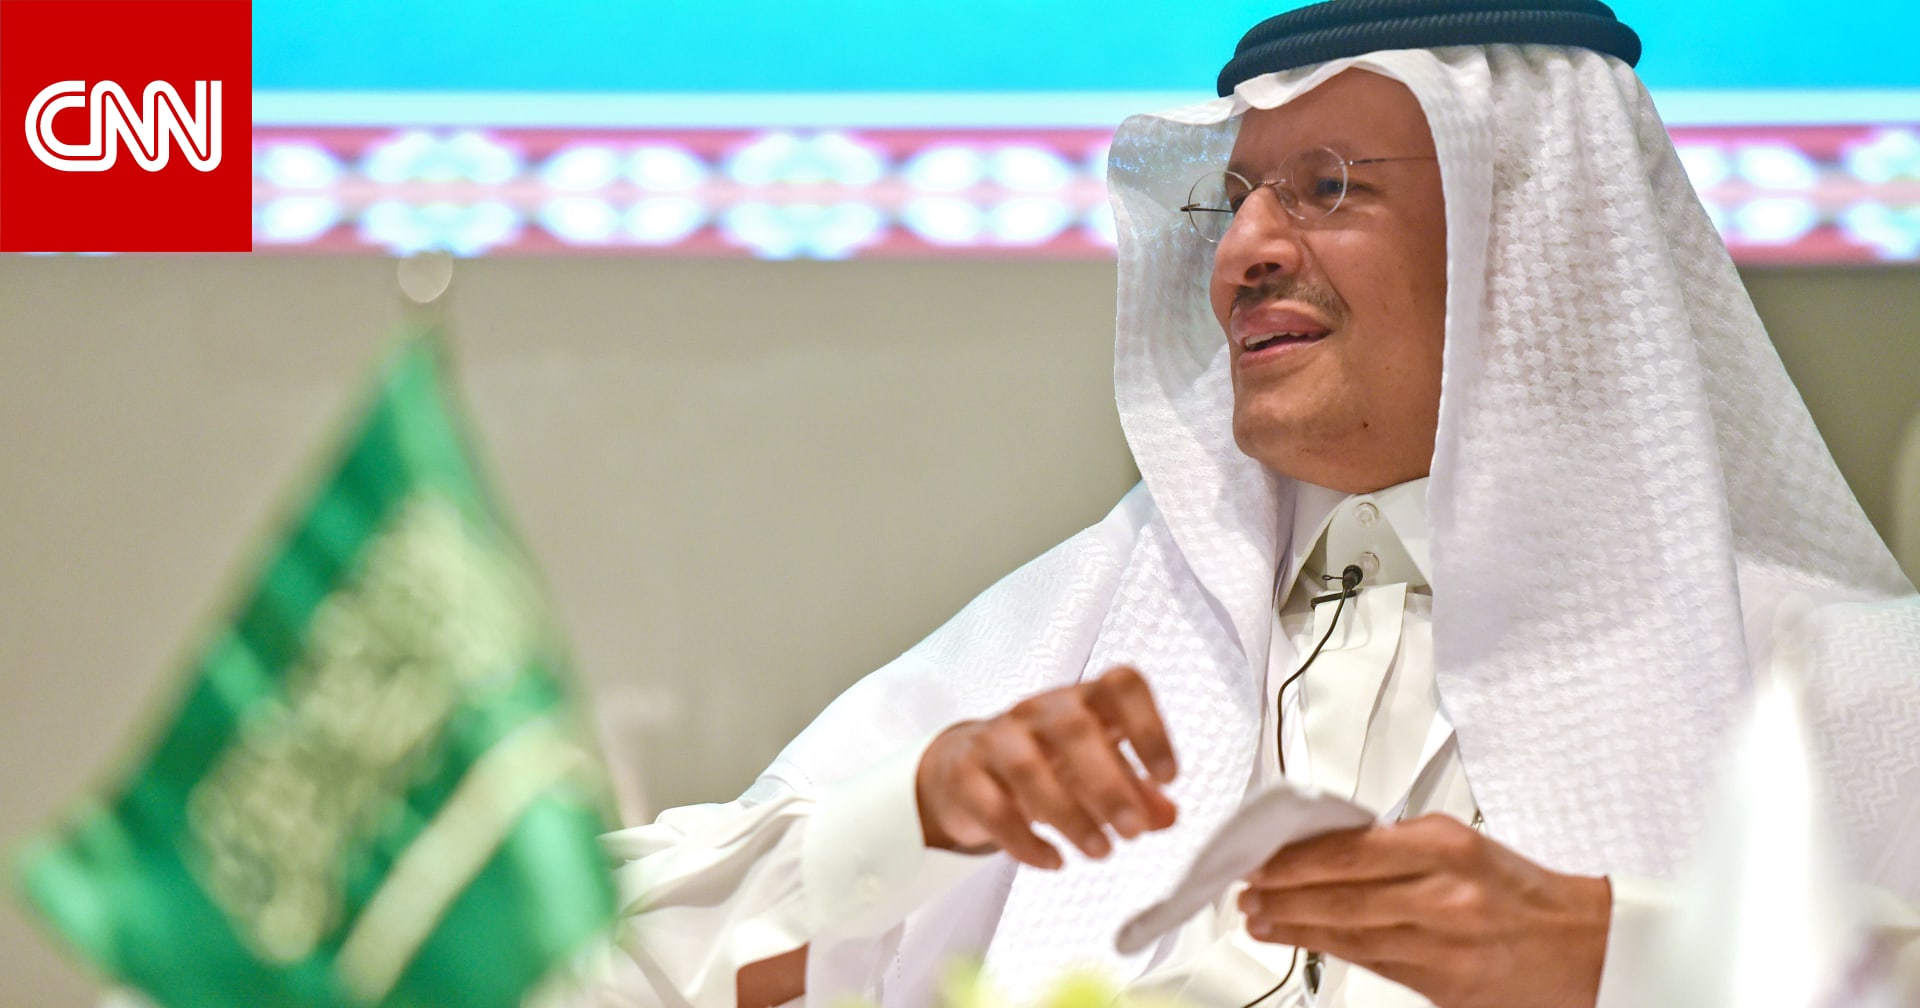 "السعودية محقة بتحذيرها".. تفاعل على تقرير لما صرح به وزير الطاقة عبدالعزيز بن سلمان